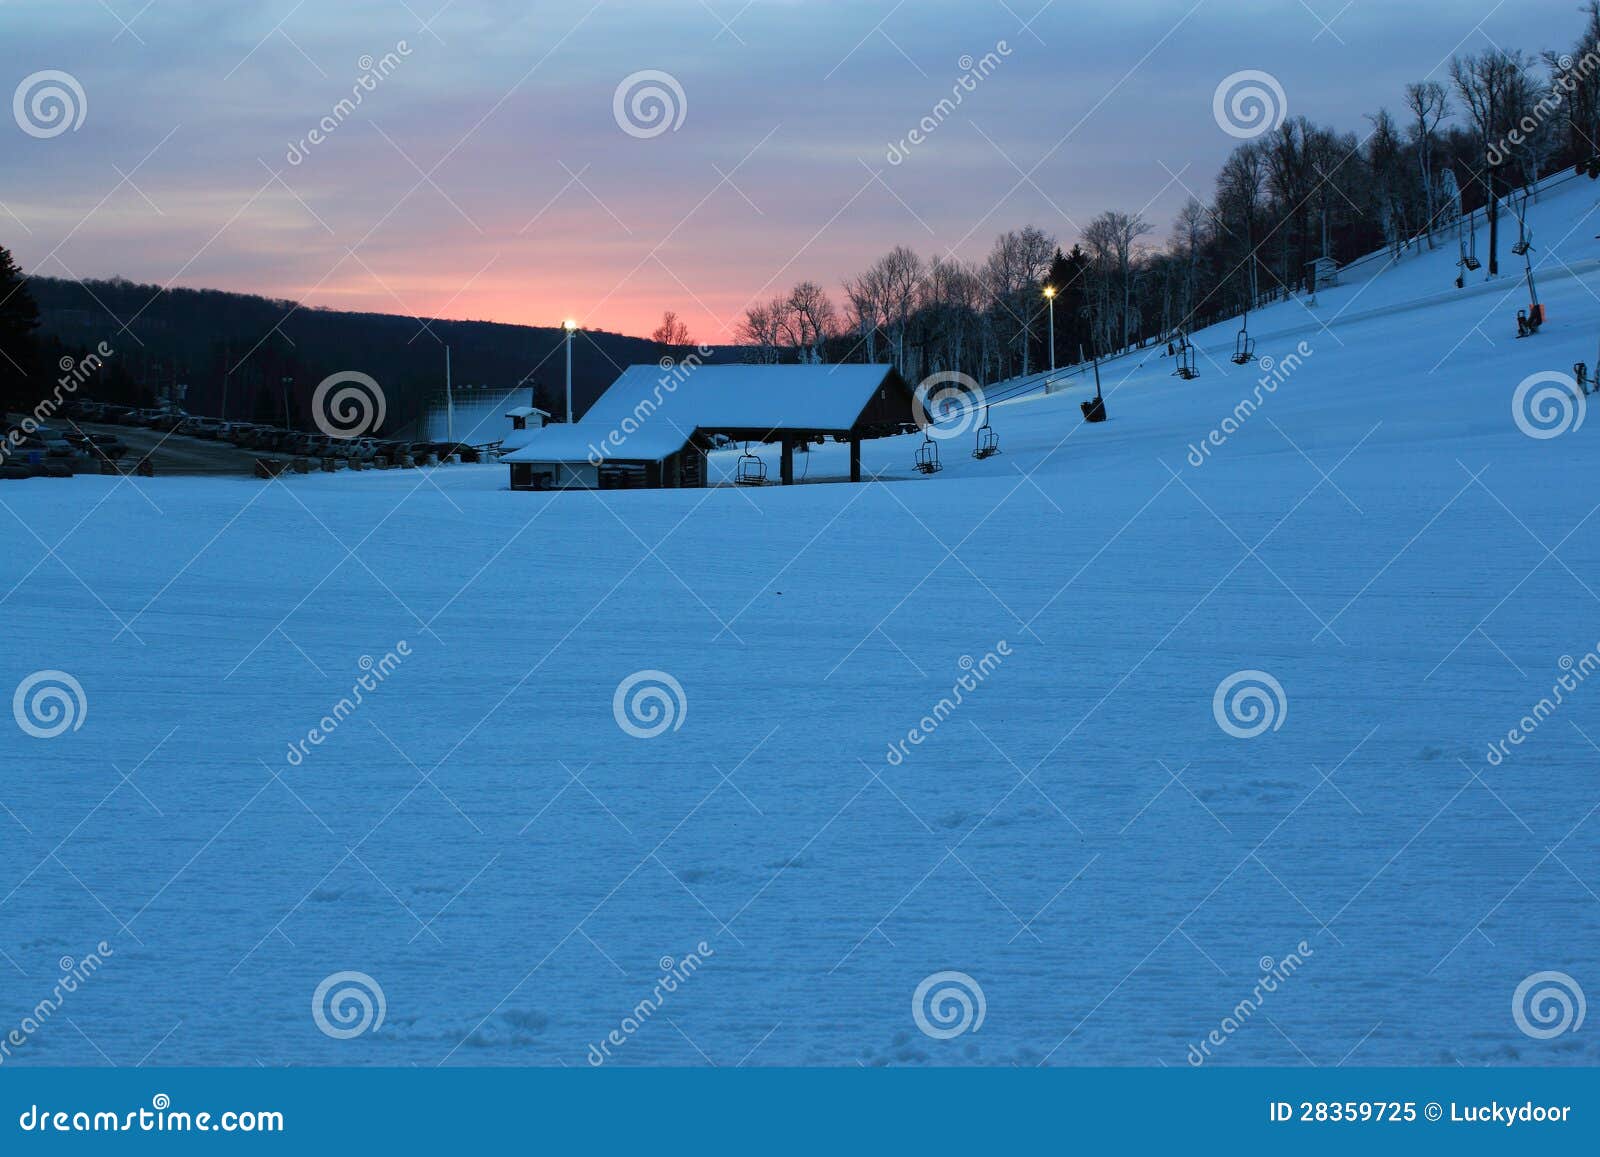 ski resorts at dawn